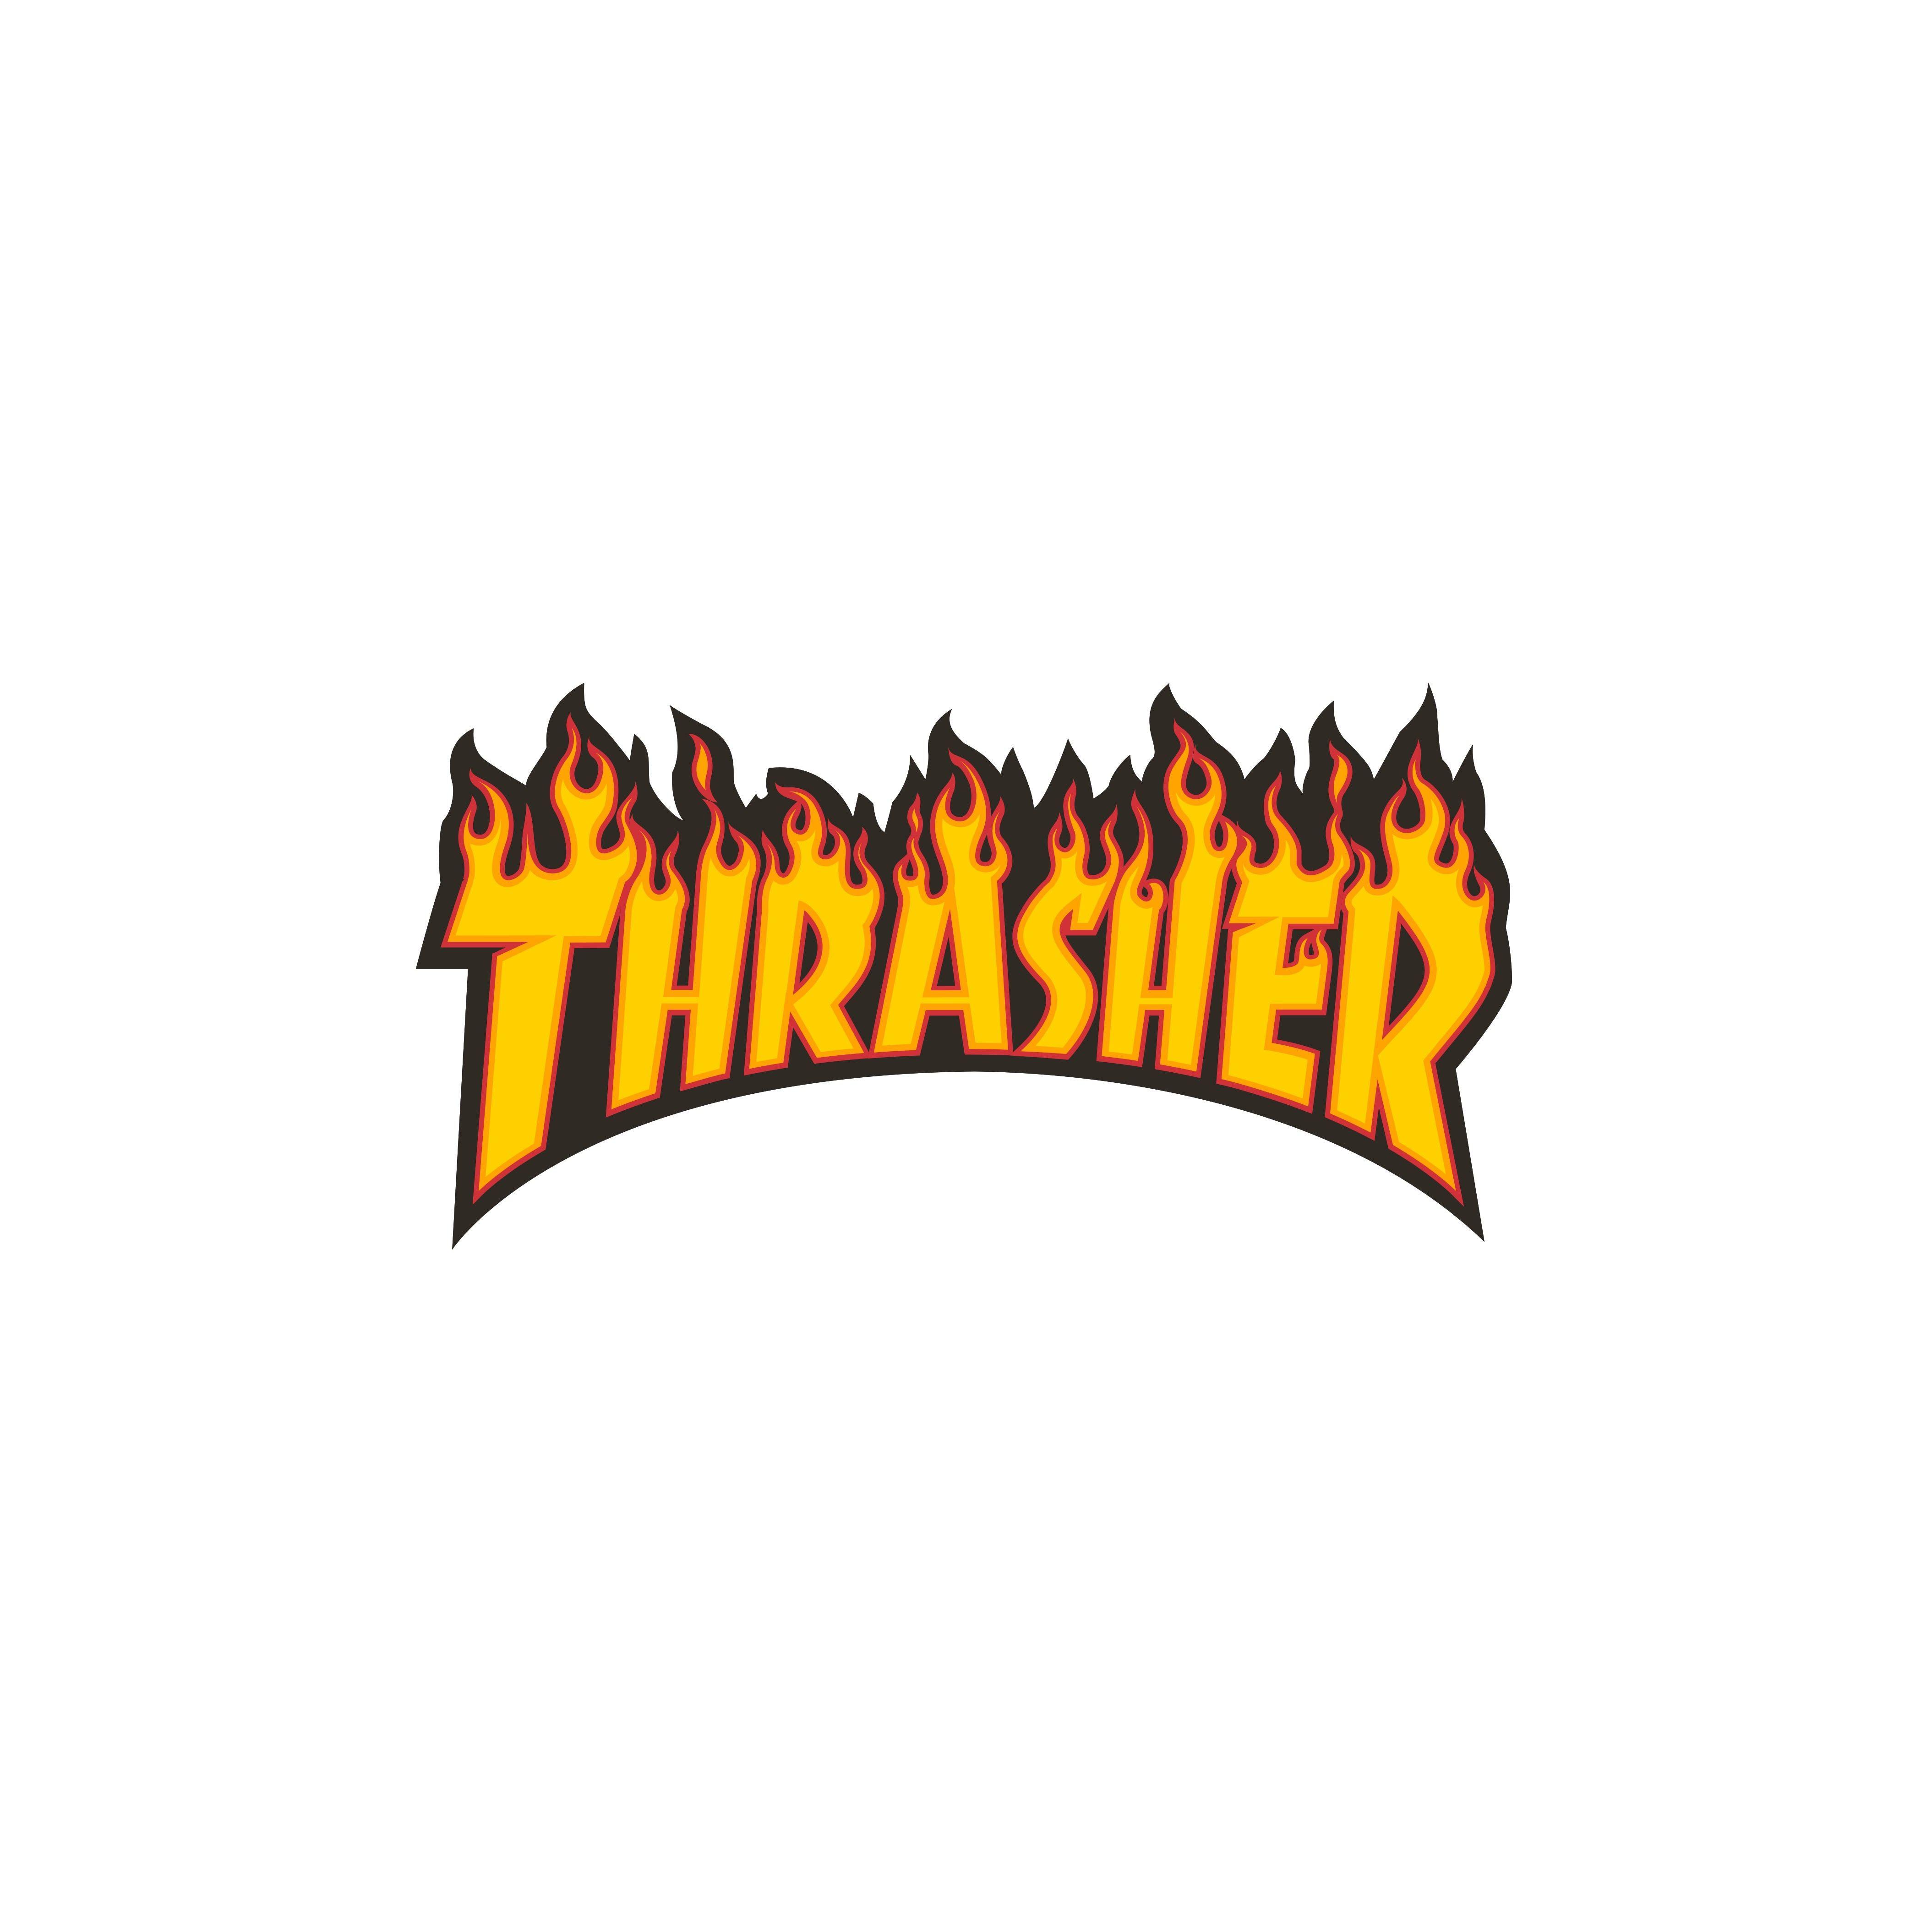 Thrasher Wallpaper Logo - Best Free Thrasher Wallpaper